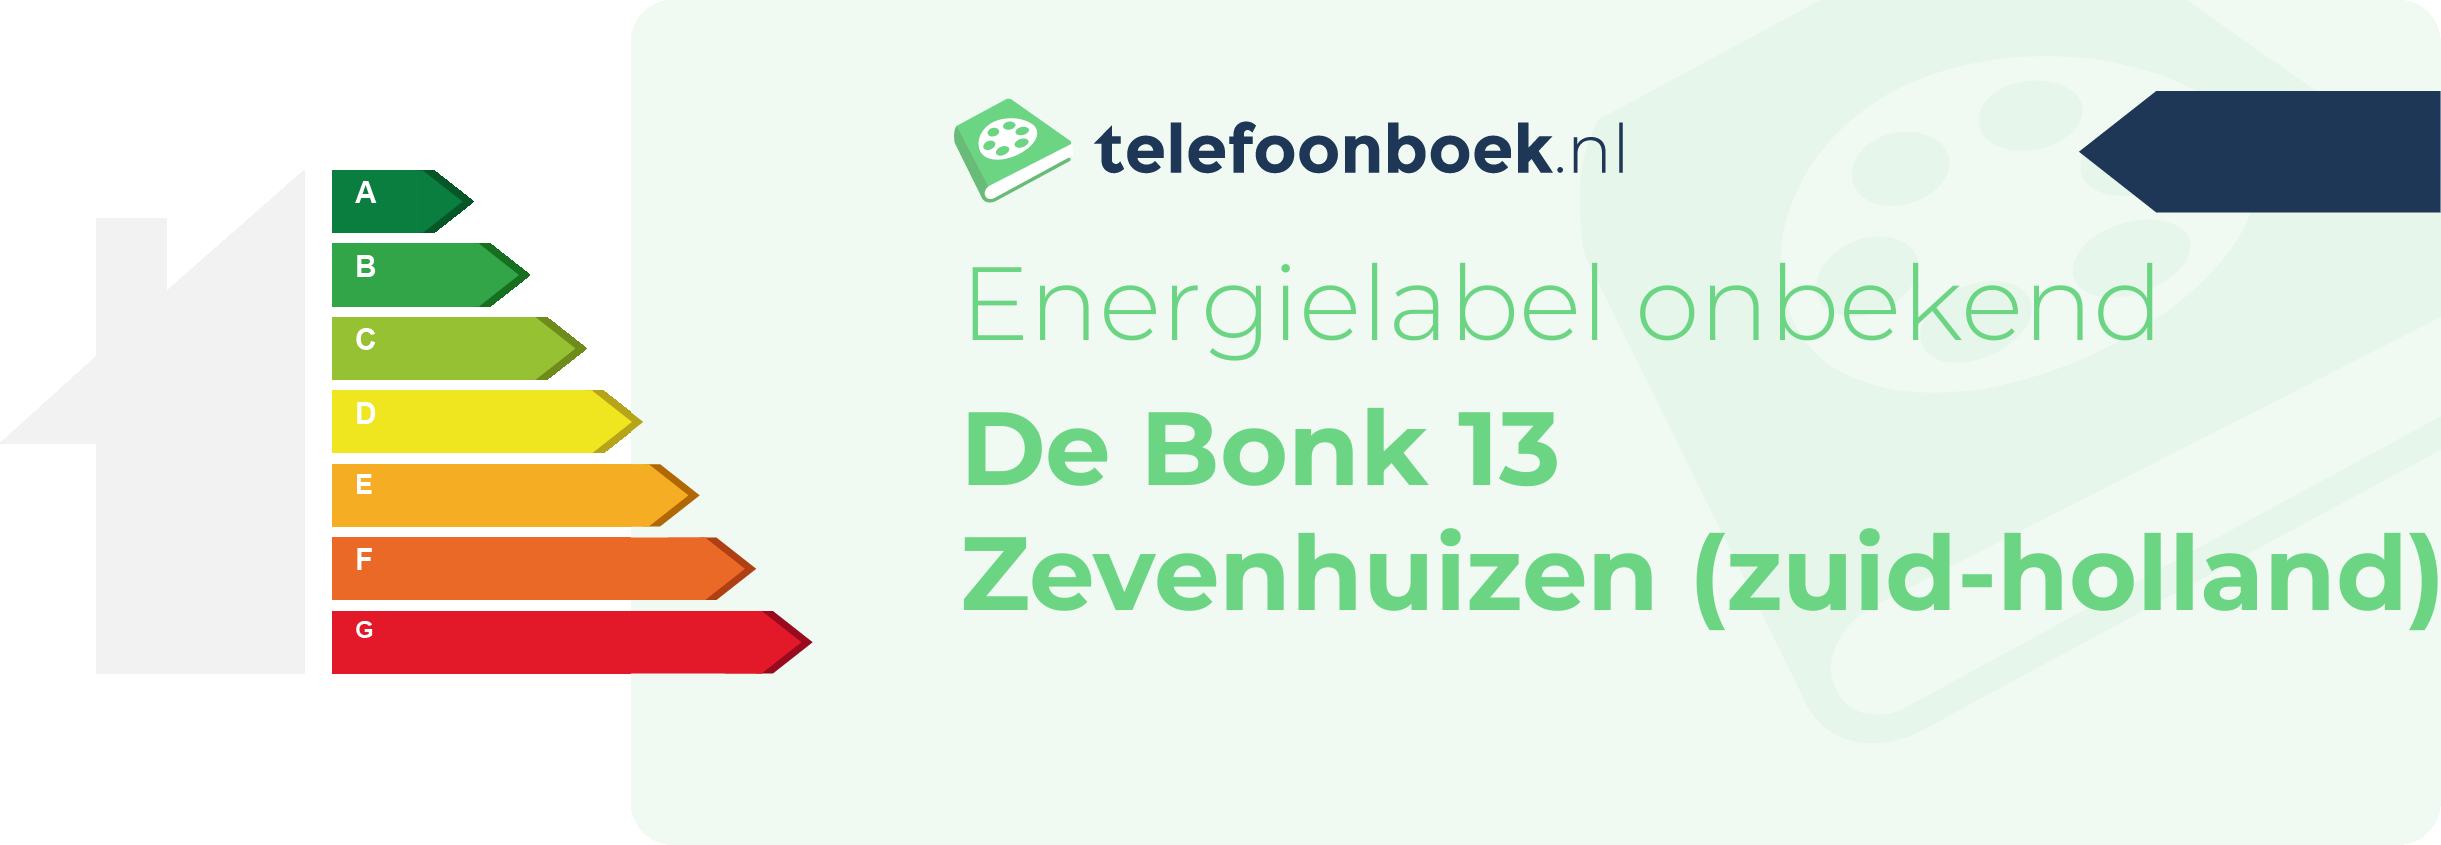 Energielabel De Bonk 13 Zevenhuizen (Zuid-Holland)